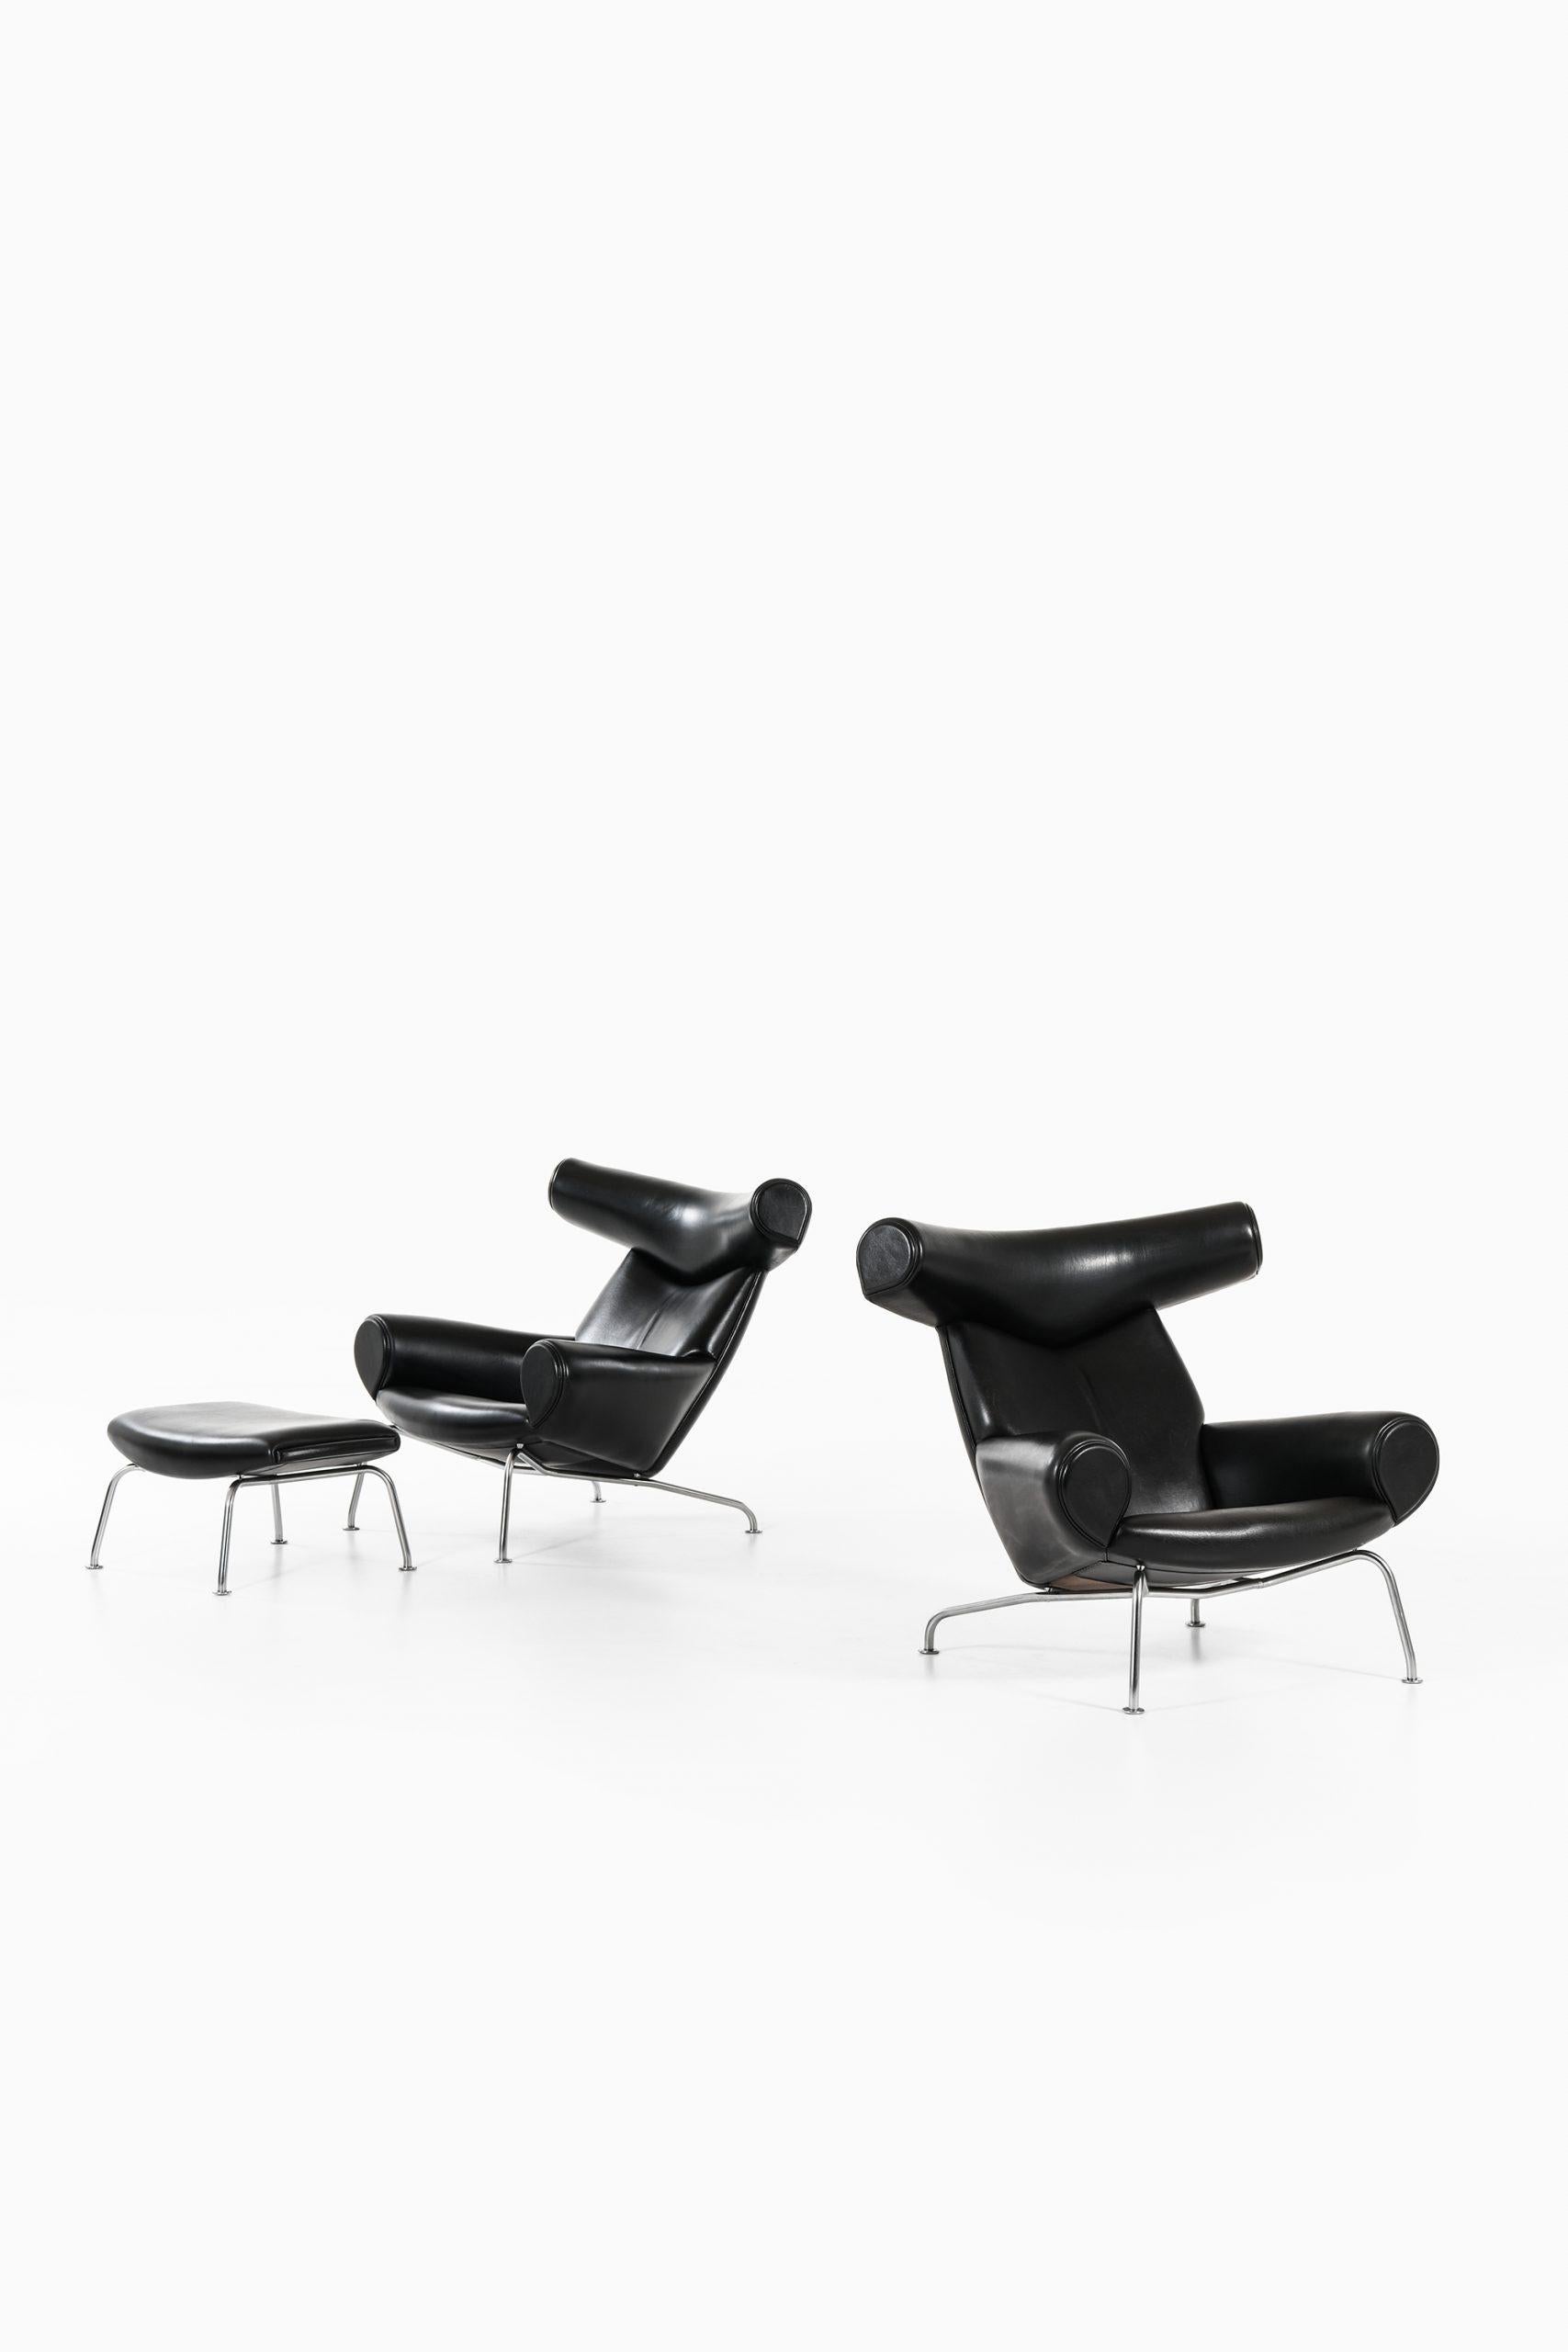 Danish Hans Wegner Easy Chairs and Stool Model EJ-100 by Erik Jørgensen in Denmark For Sale